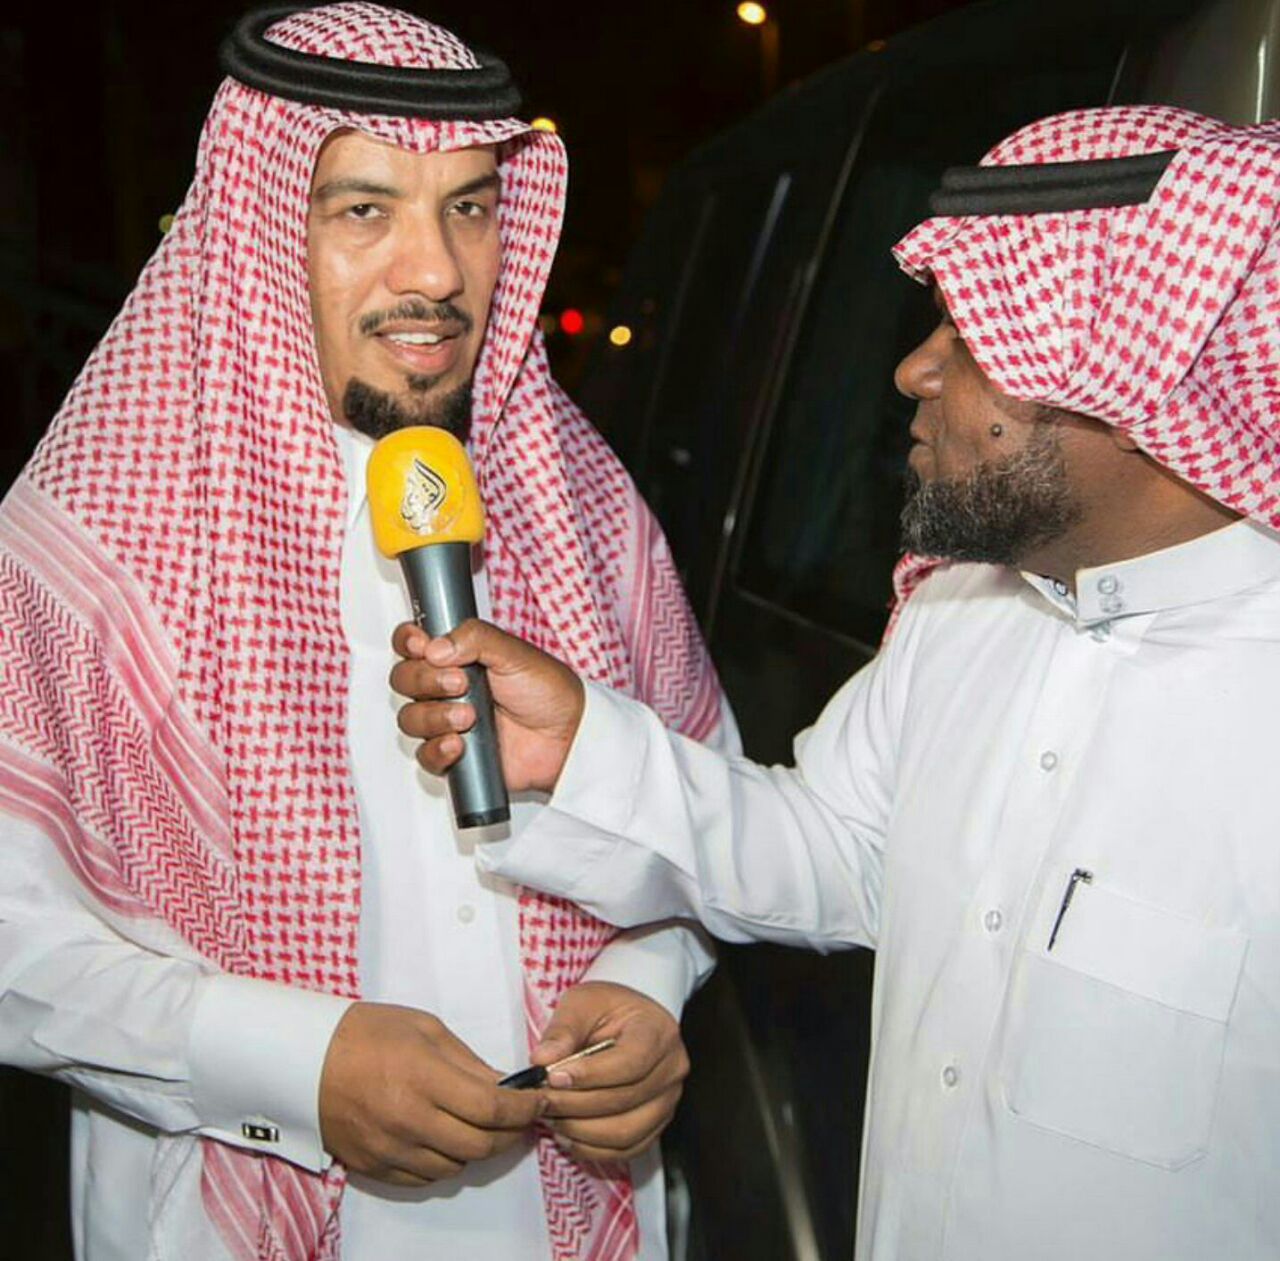 سعودي يبتكر “قناة” للتواصل مع أفراد عائلته